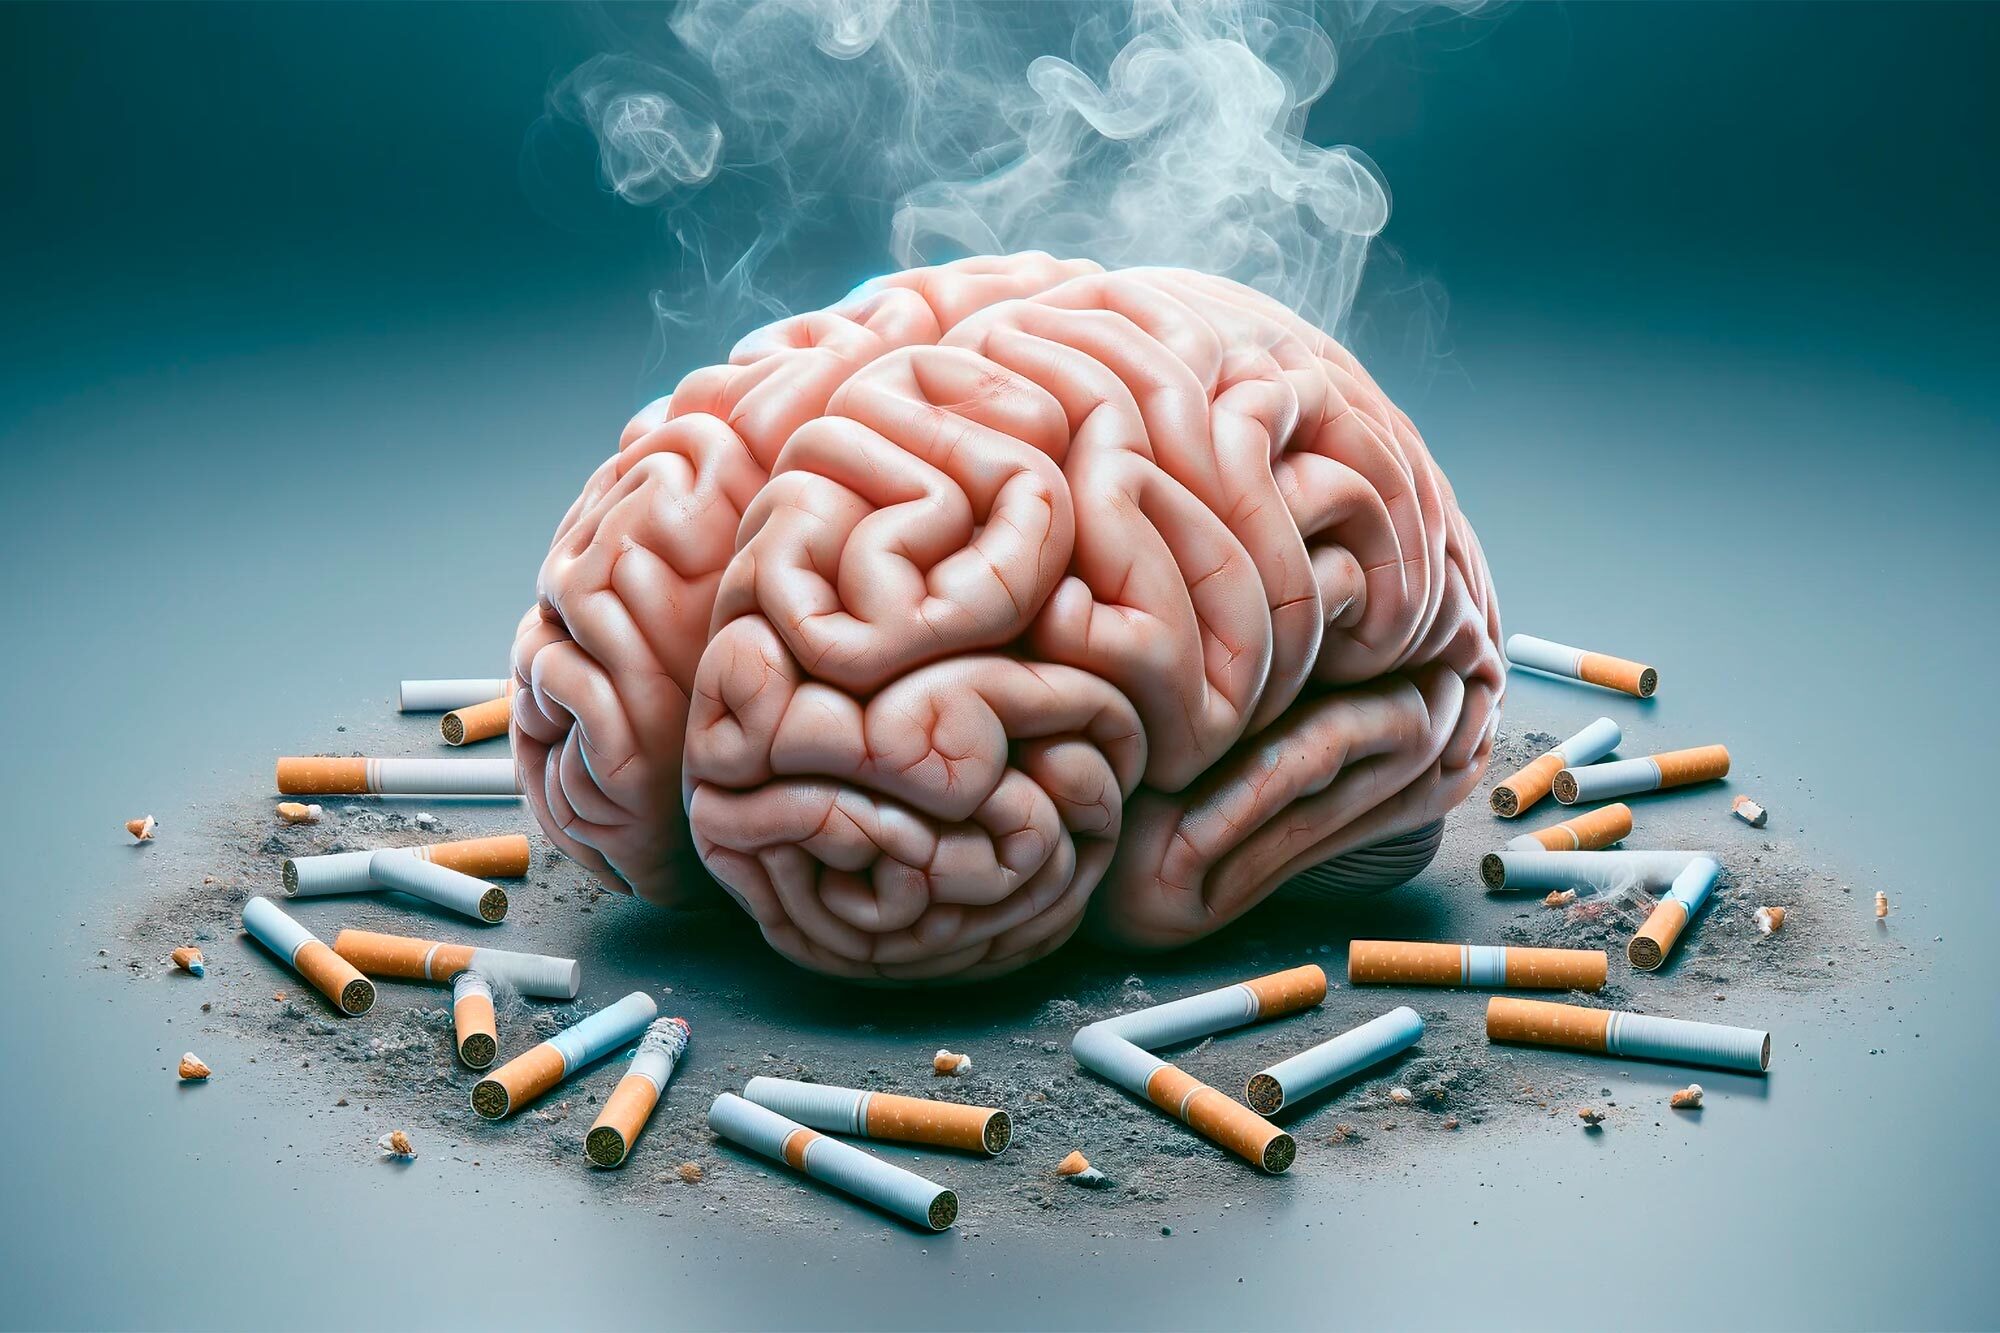 سیگار کشیدن مغز را کوچک می کند